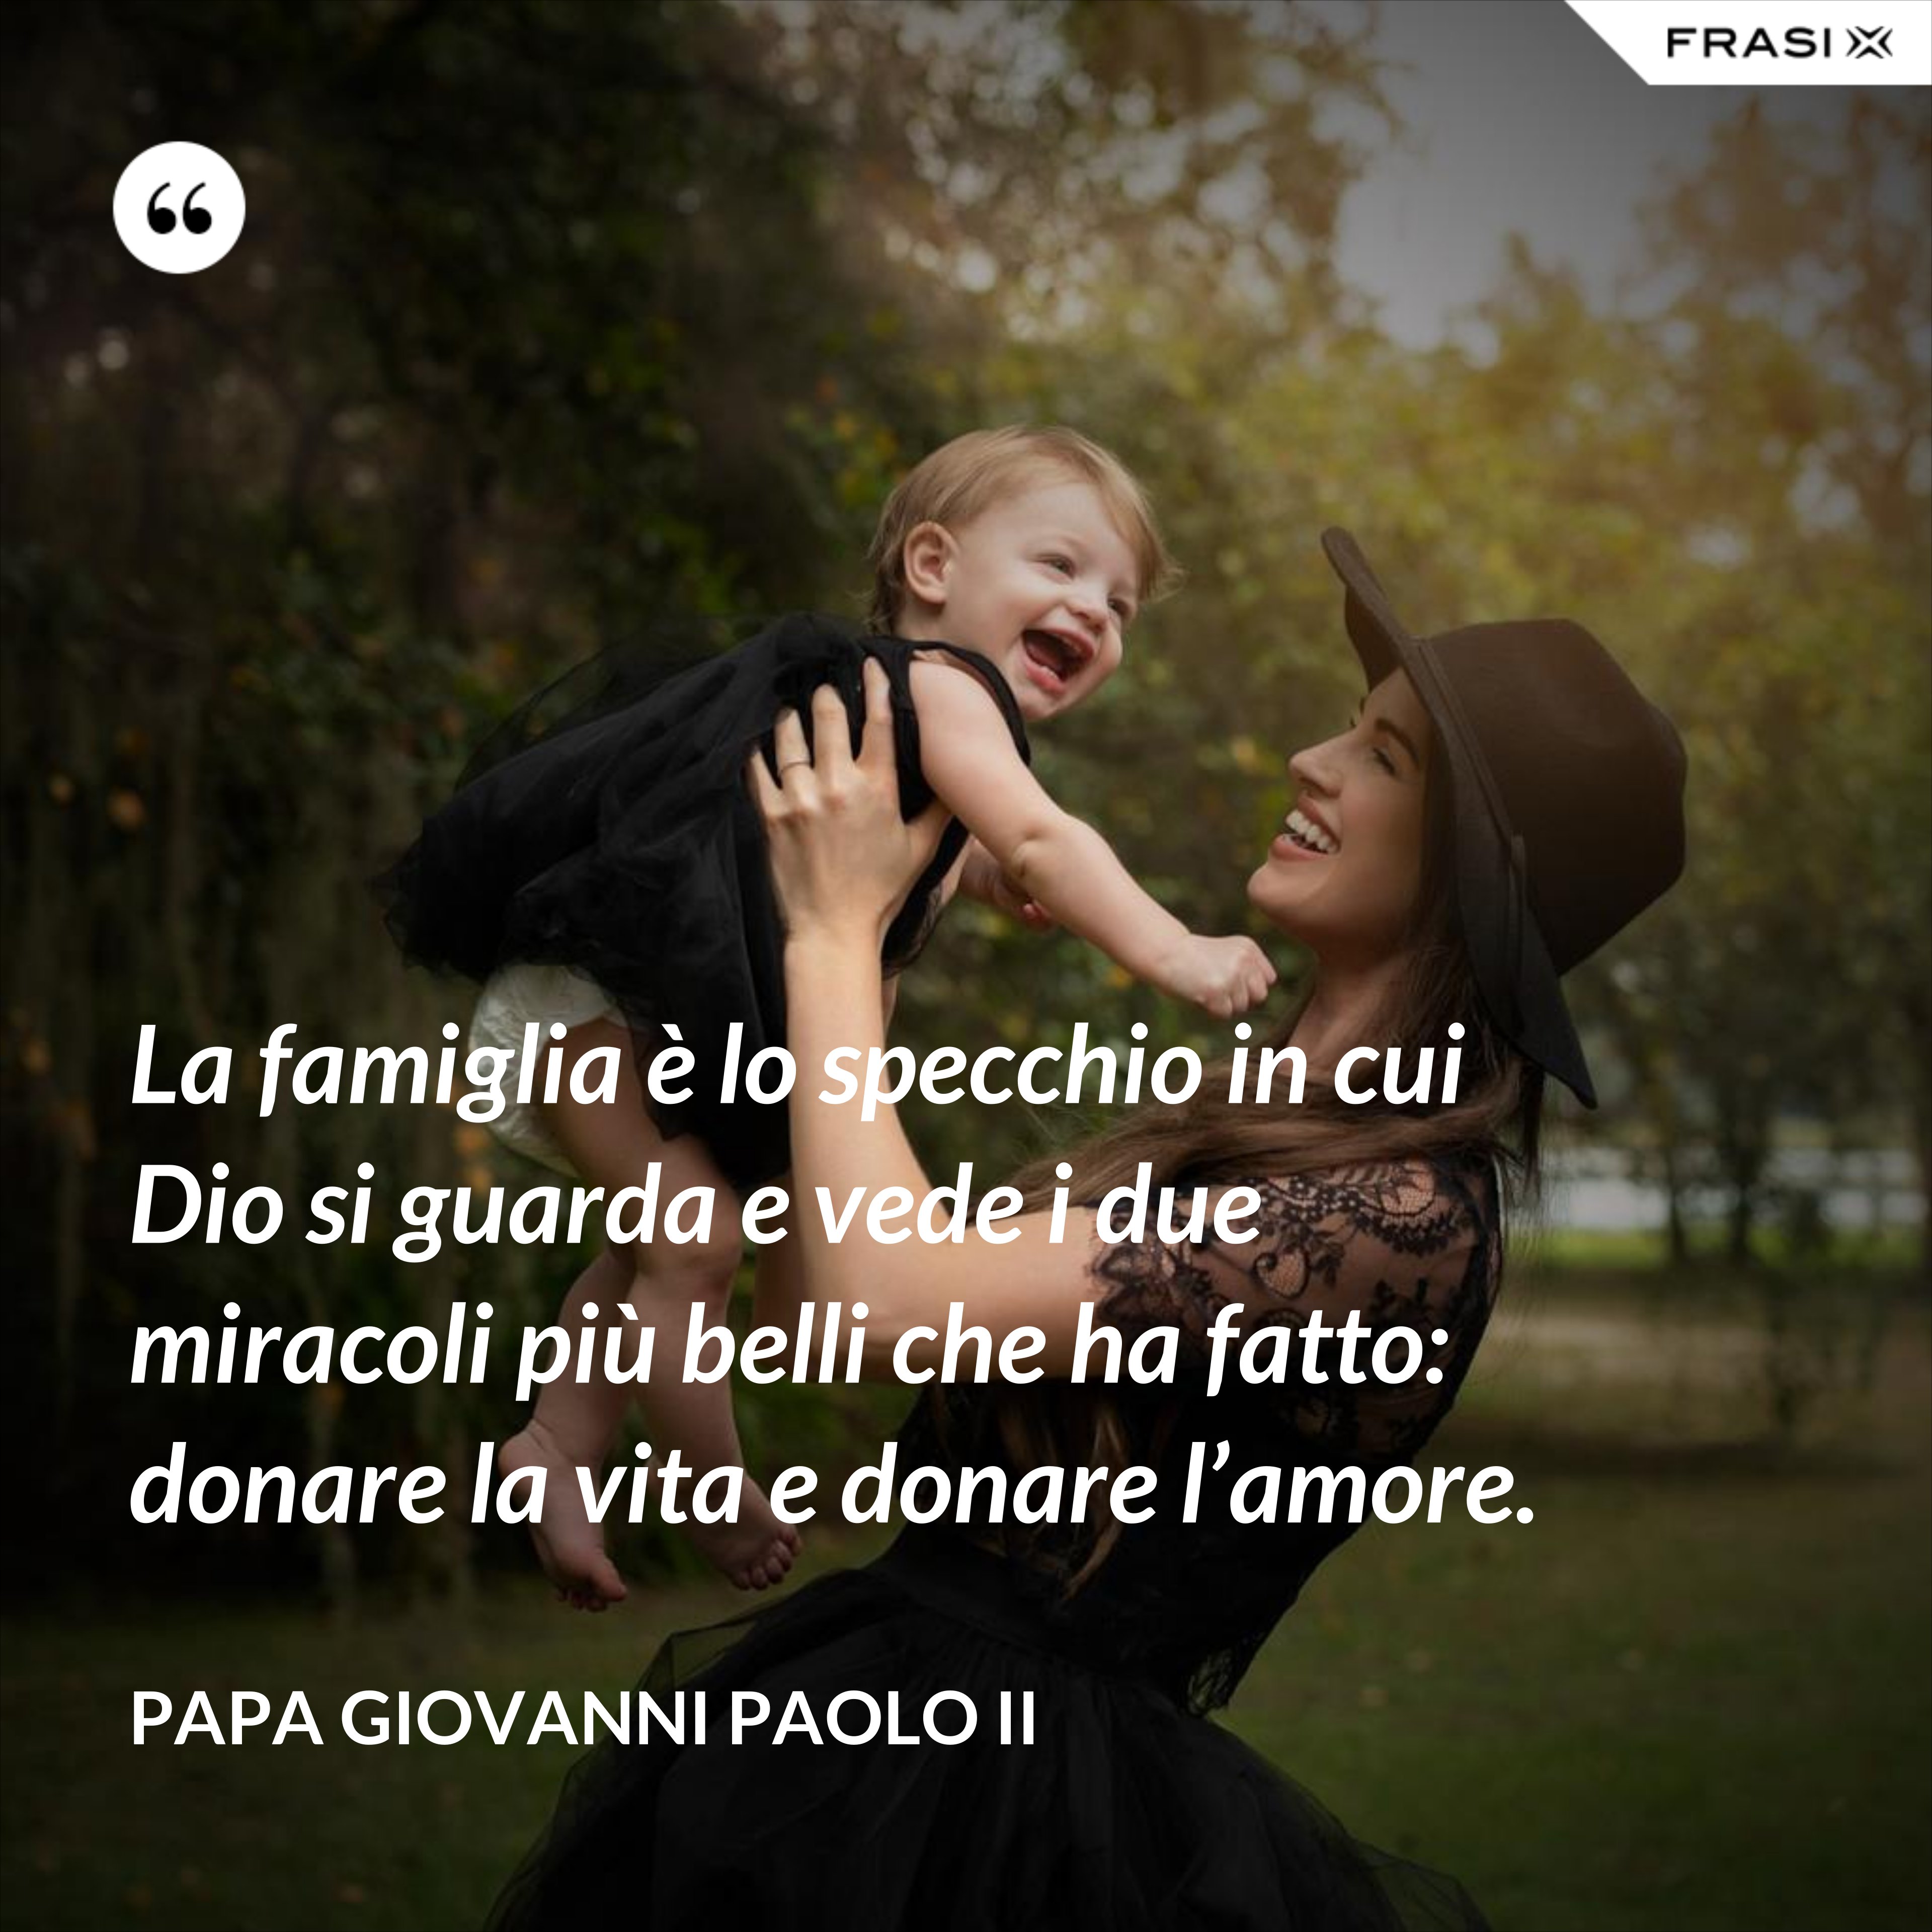 La famiglia è lo specchio in cui Dio si guarda e vede i due miracoli più belli che ha fatto: donare la vita e donare l’amore. - Papa Giovanni Paolo II